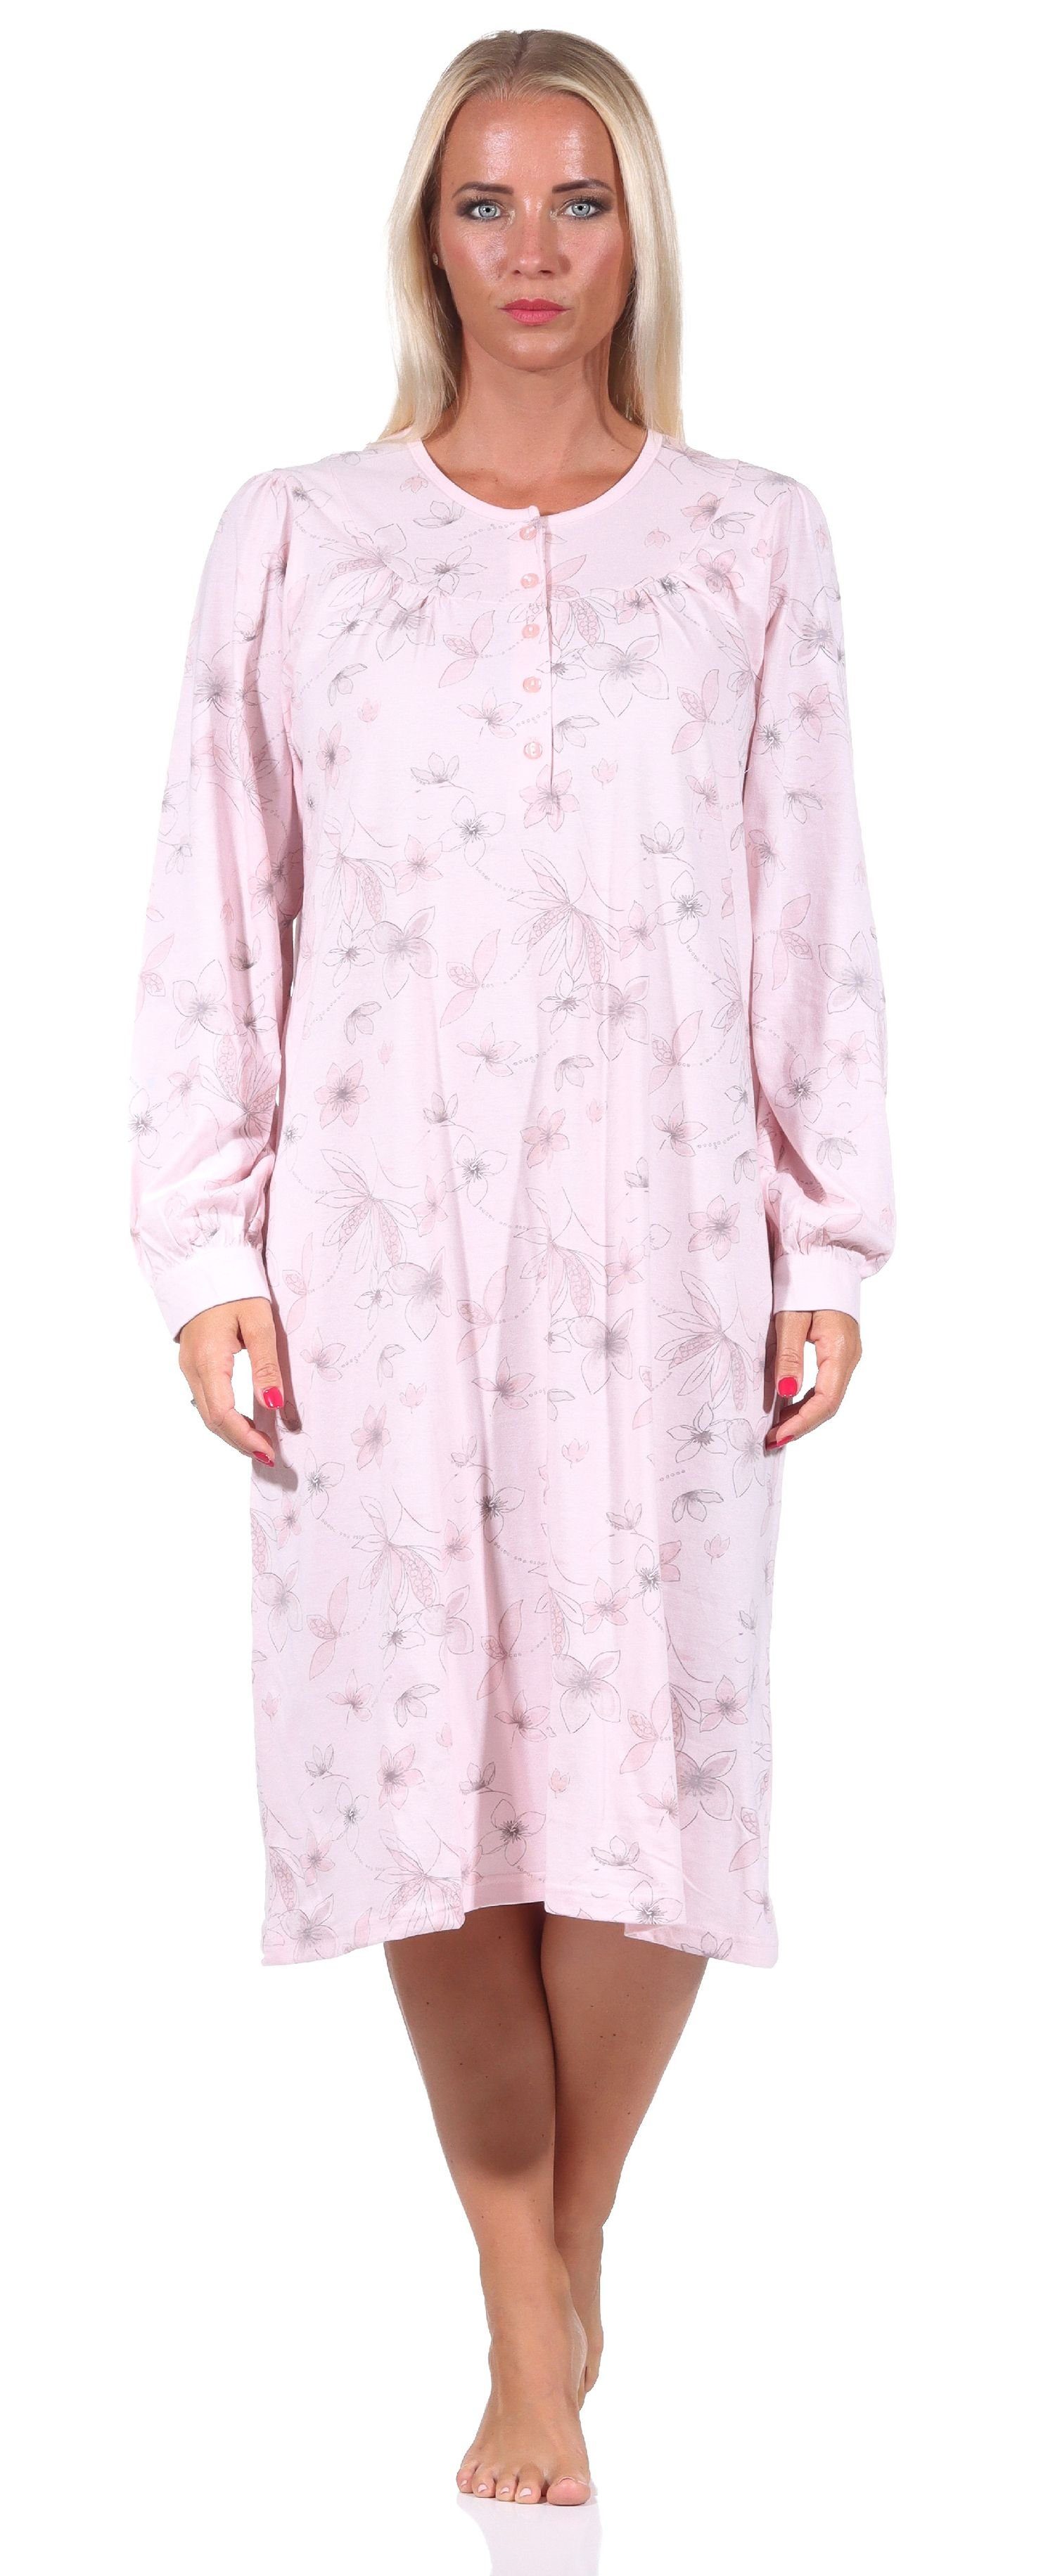 Normann Nachthemd Frauliches Damen Nachthemd,cm Länge, Knopfleiste am Hals rosa